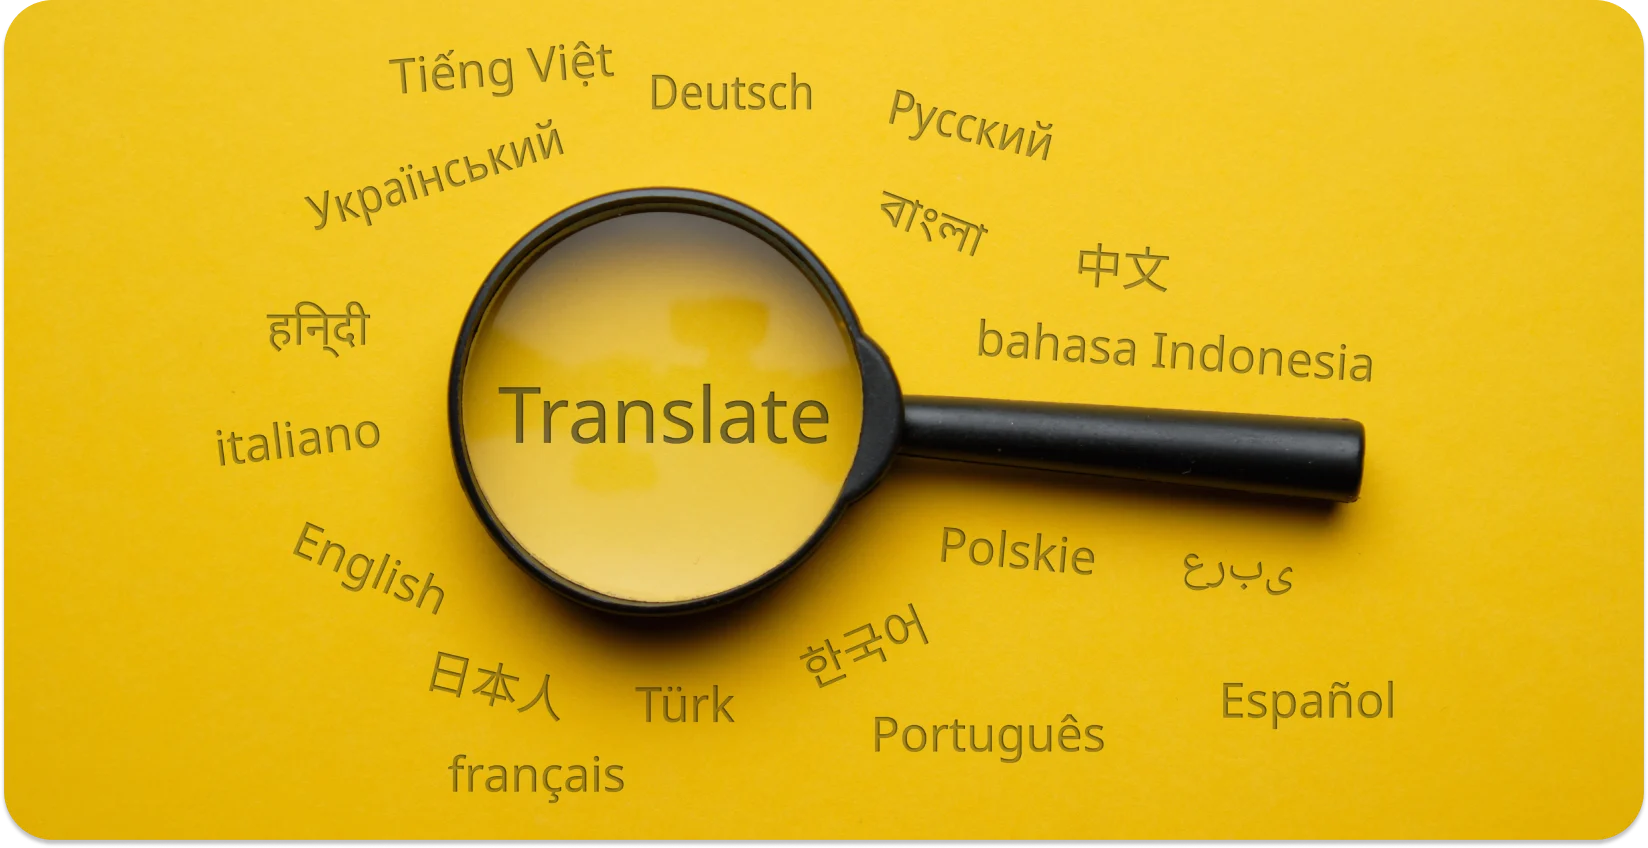 Nagyító, amely kiemeli a "Translate" szót a különböző nyelvek között, szimbolizálva a nyelvi konverziót.